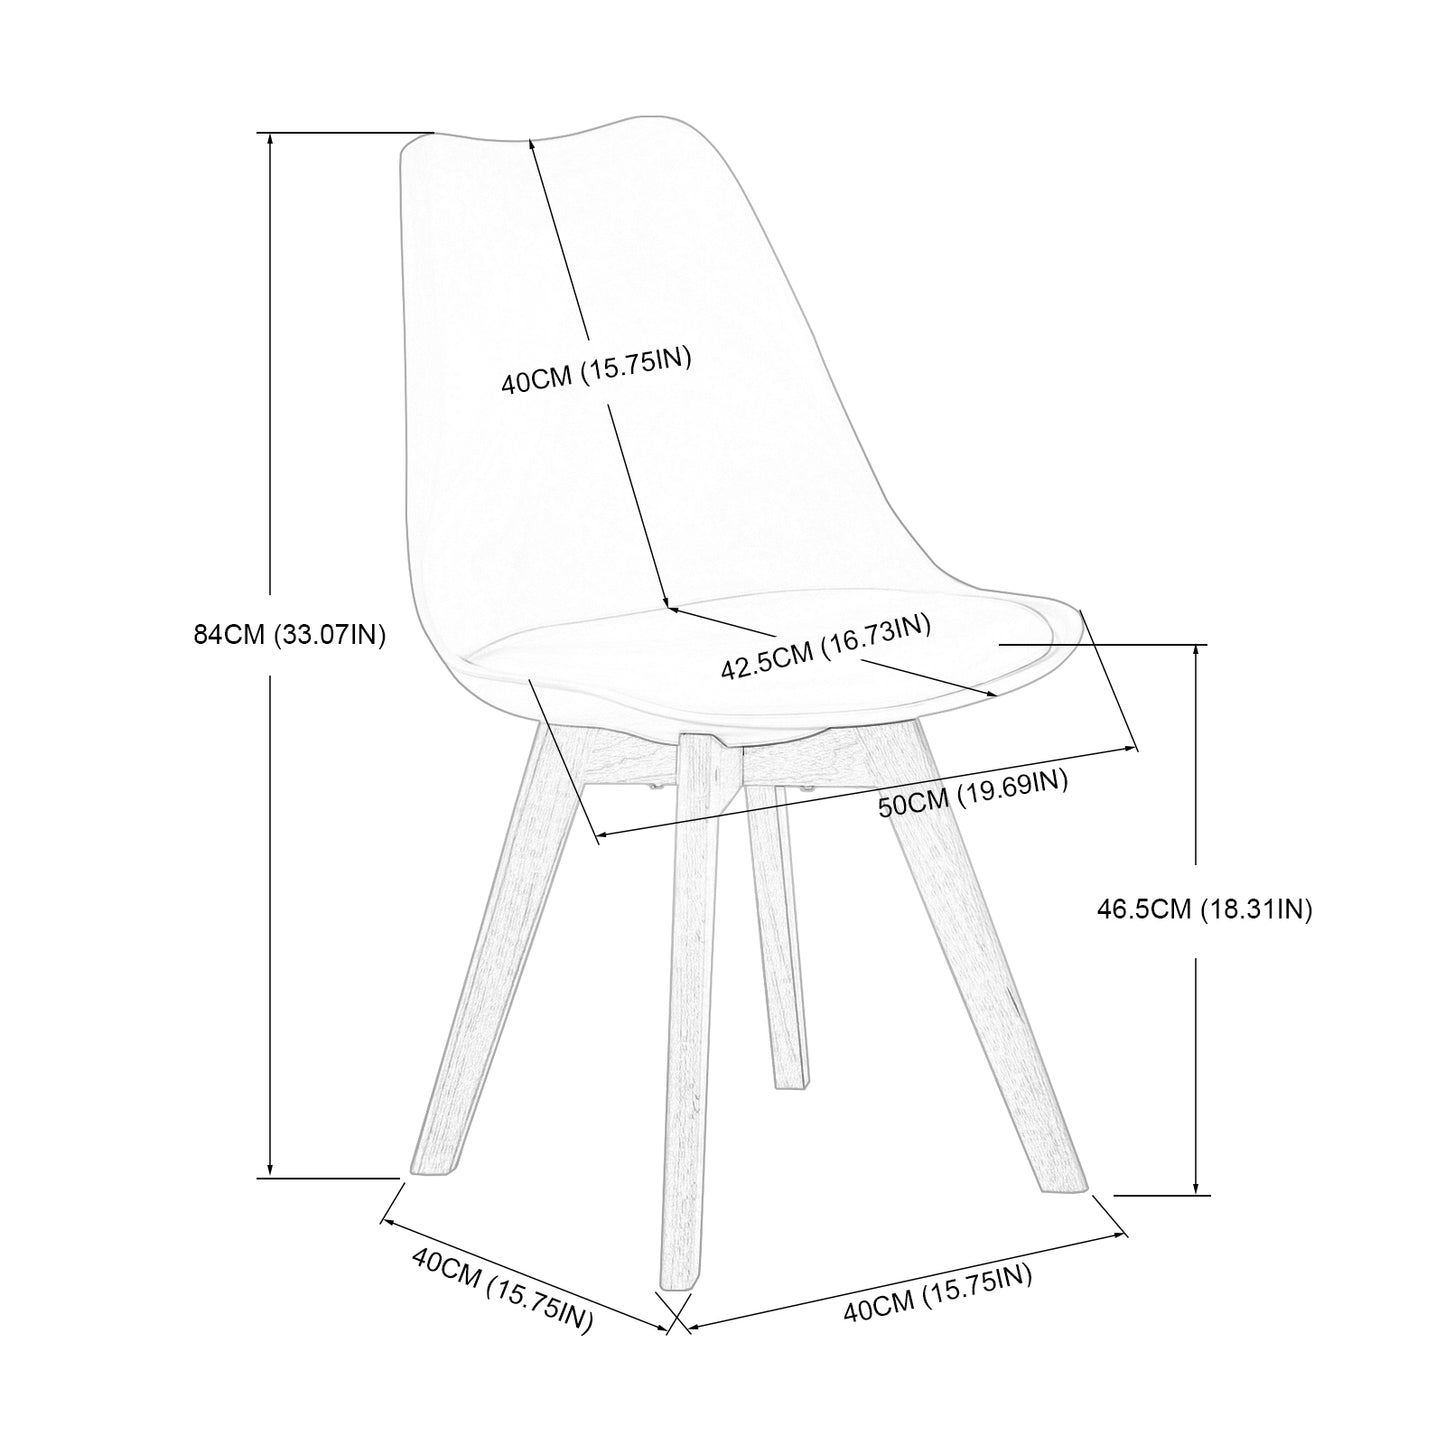 Lot de 4 chaises Scandinaves au design contemporain pour salle à manger